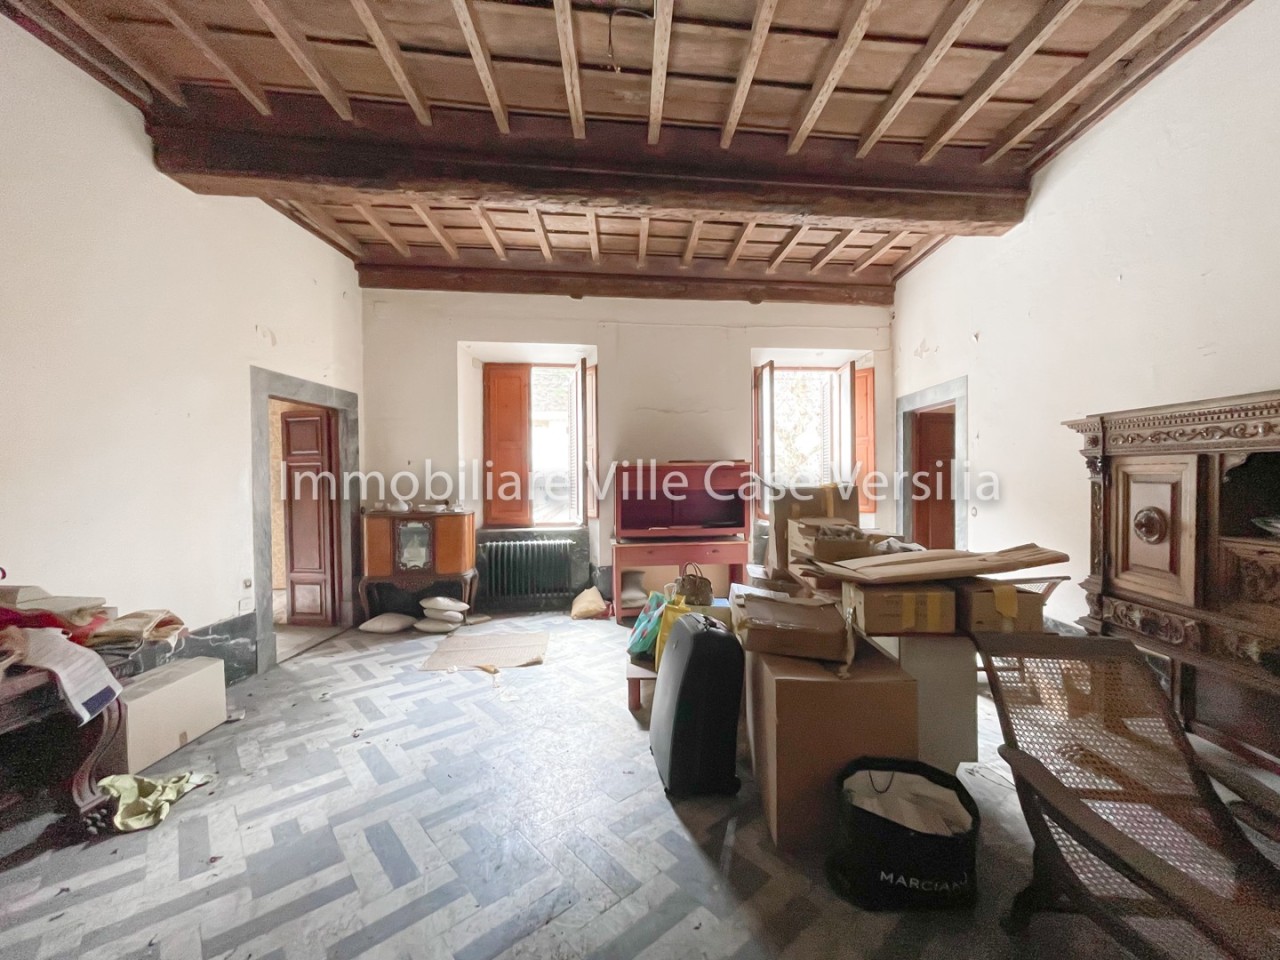 Appartamento in vendita a Seravezza, 5 locali, prezzo € 400.000 | PortaleAgenzieImmobiliari.it